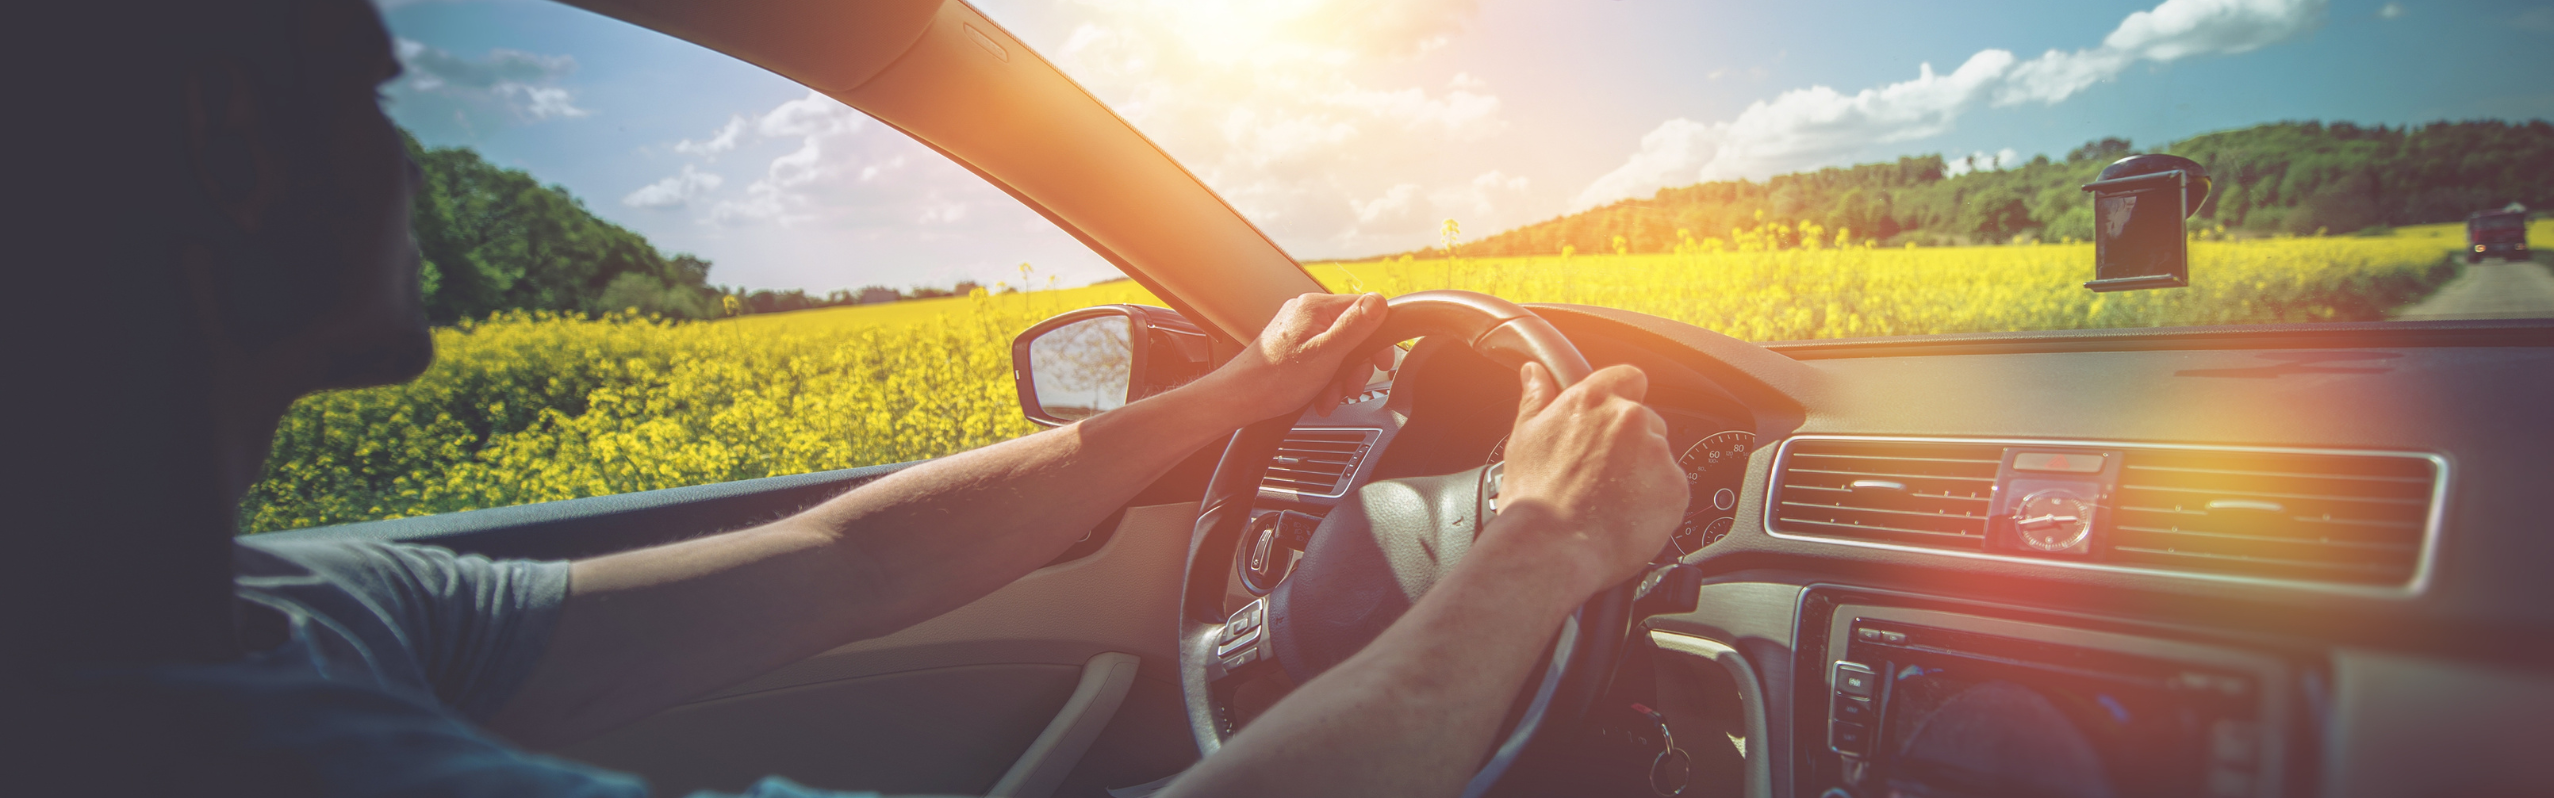 Sonnenschutz Auto: alles cool bei heißen Temperaturen, Tipps &  Wissenswertes